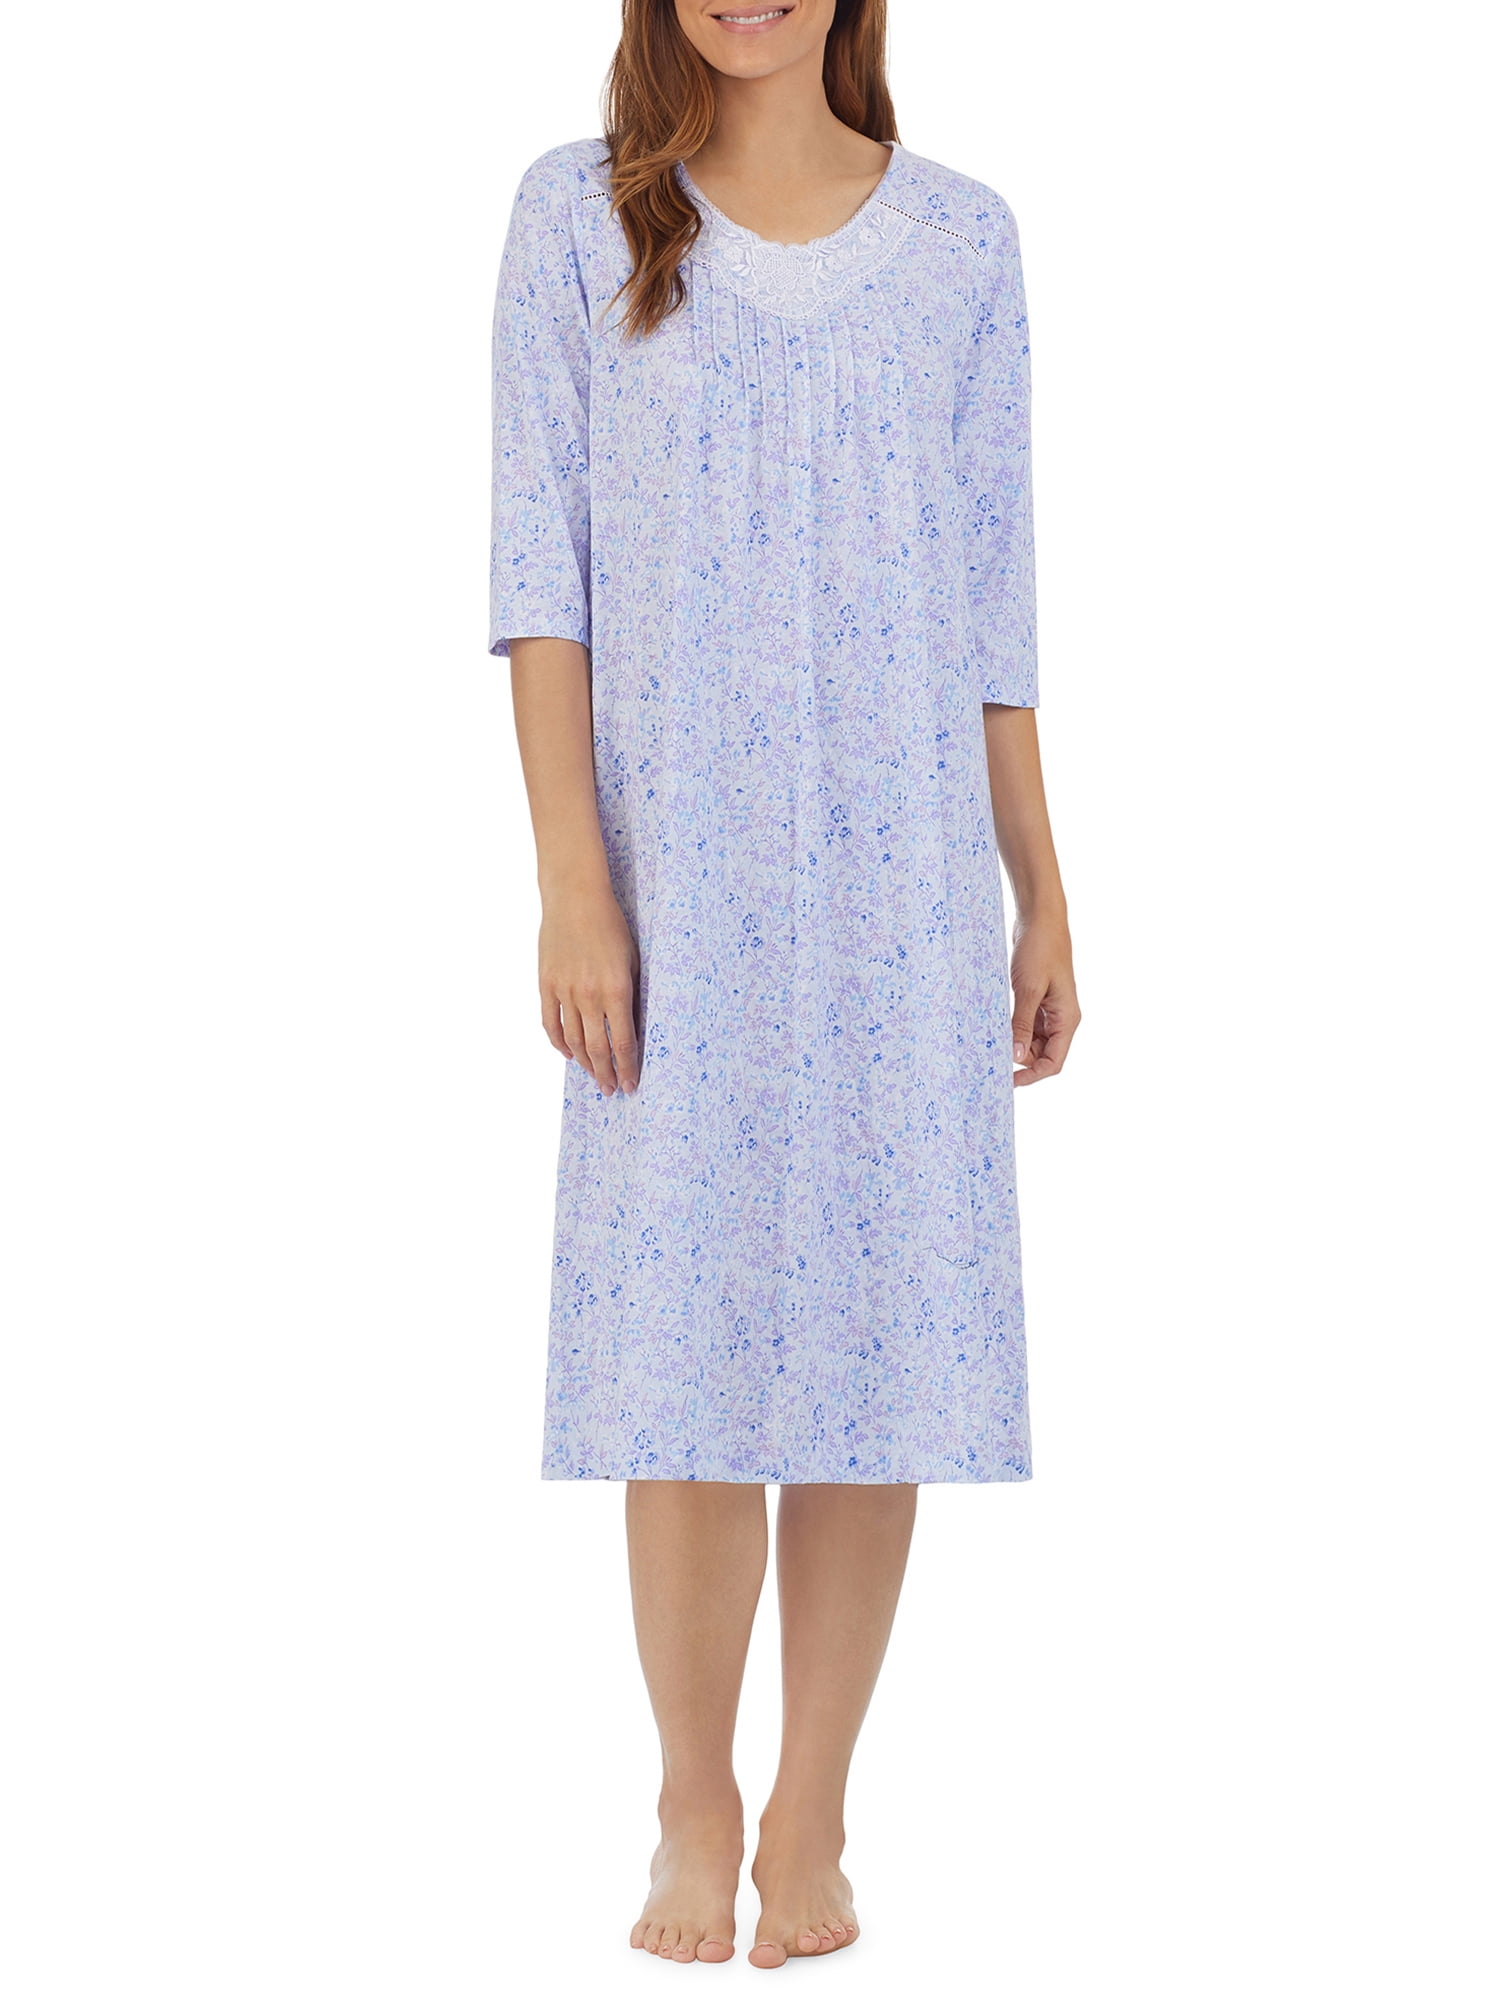 Carole Hochman Women's and Women's Plus 3/4 Sleeve Knit Waltz Nightgown 